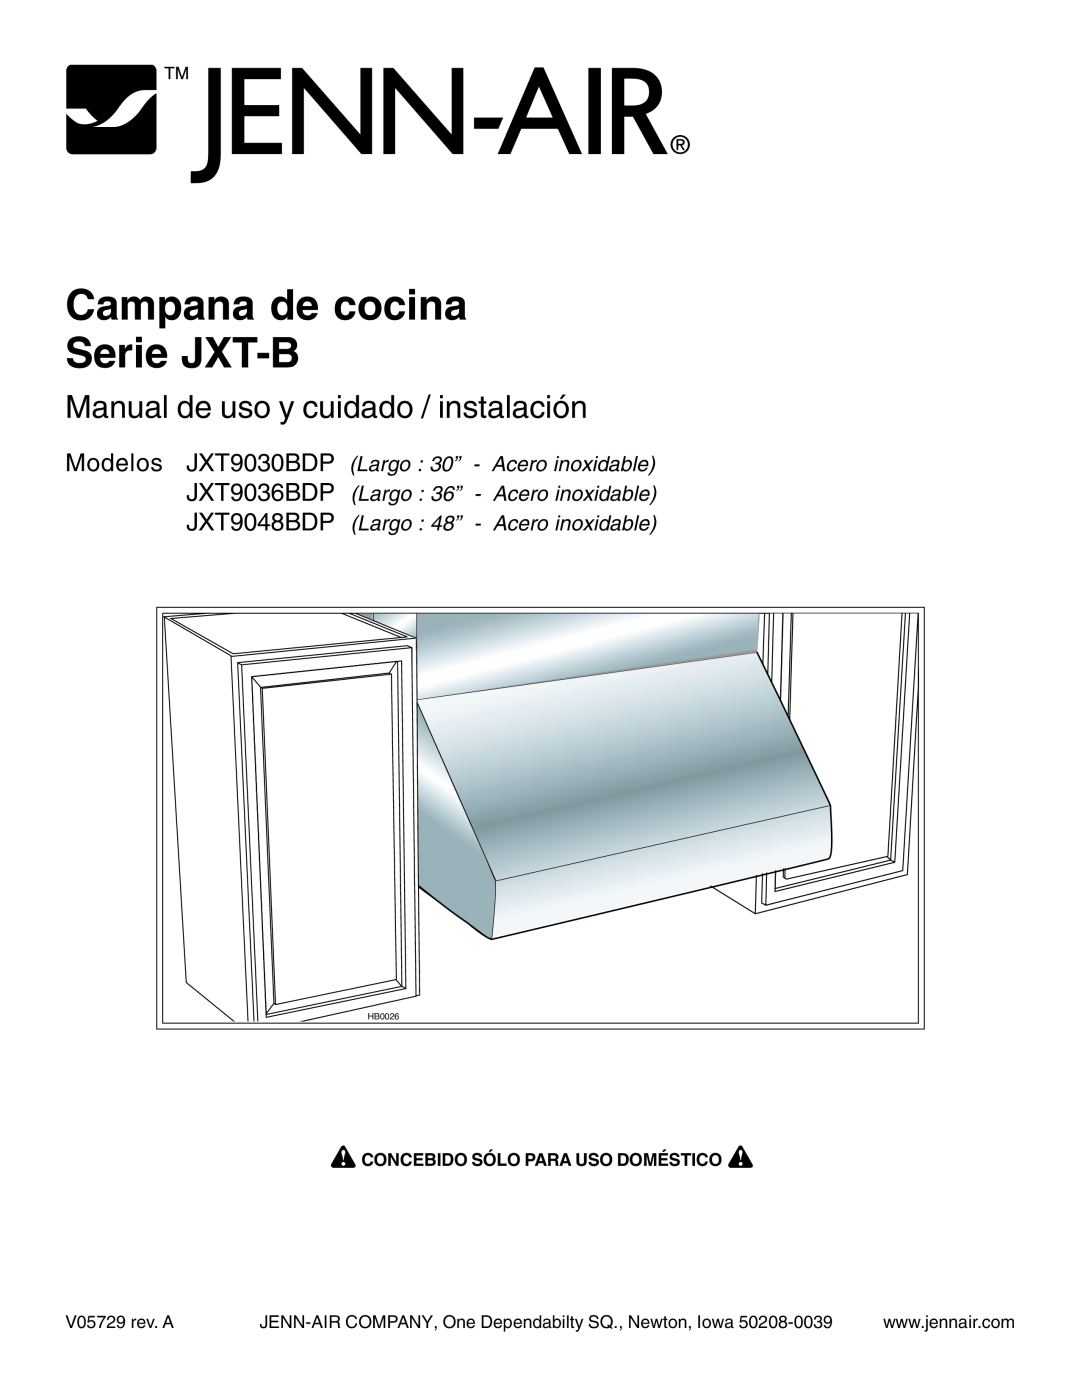 Jenn-Air JXT9036BDP Campana de cocina Serie JXT-B, Manual de uso y cuidado / instalación, Modelos, JXT9030BDP Largo 30” 